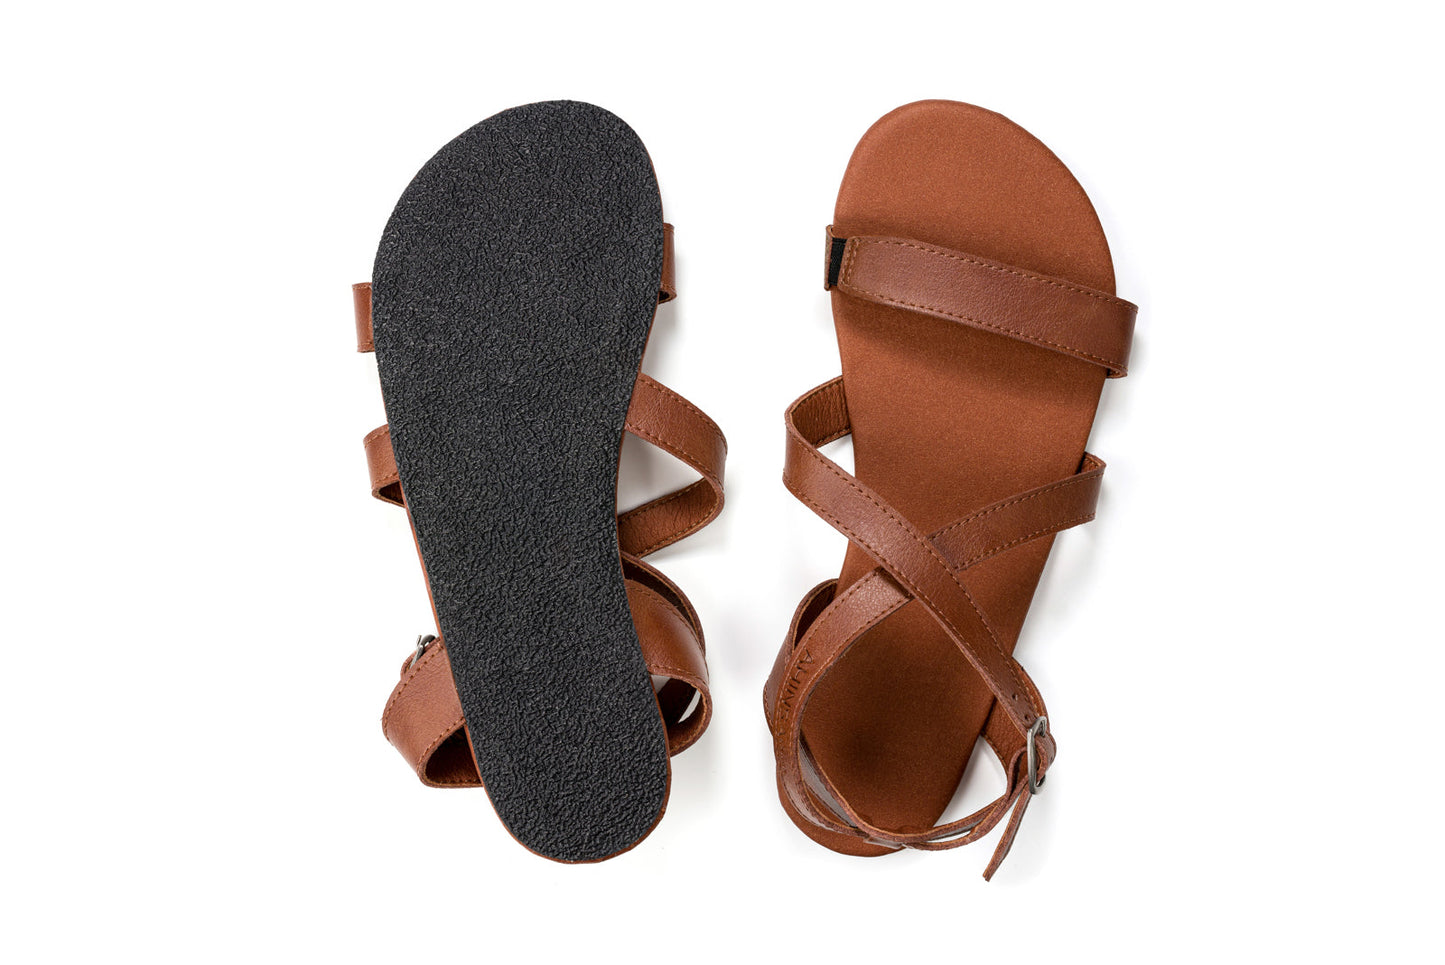 Ahinsa Hava barfods sandaler til kvinder i farven brown, saal